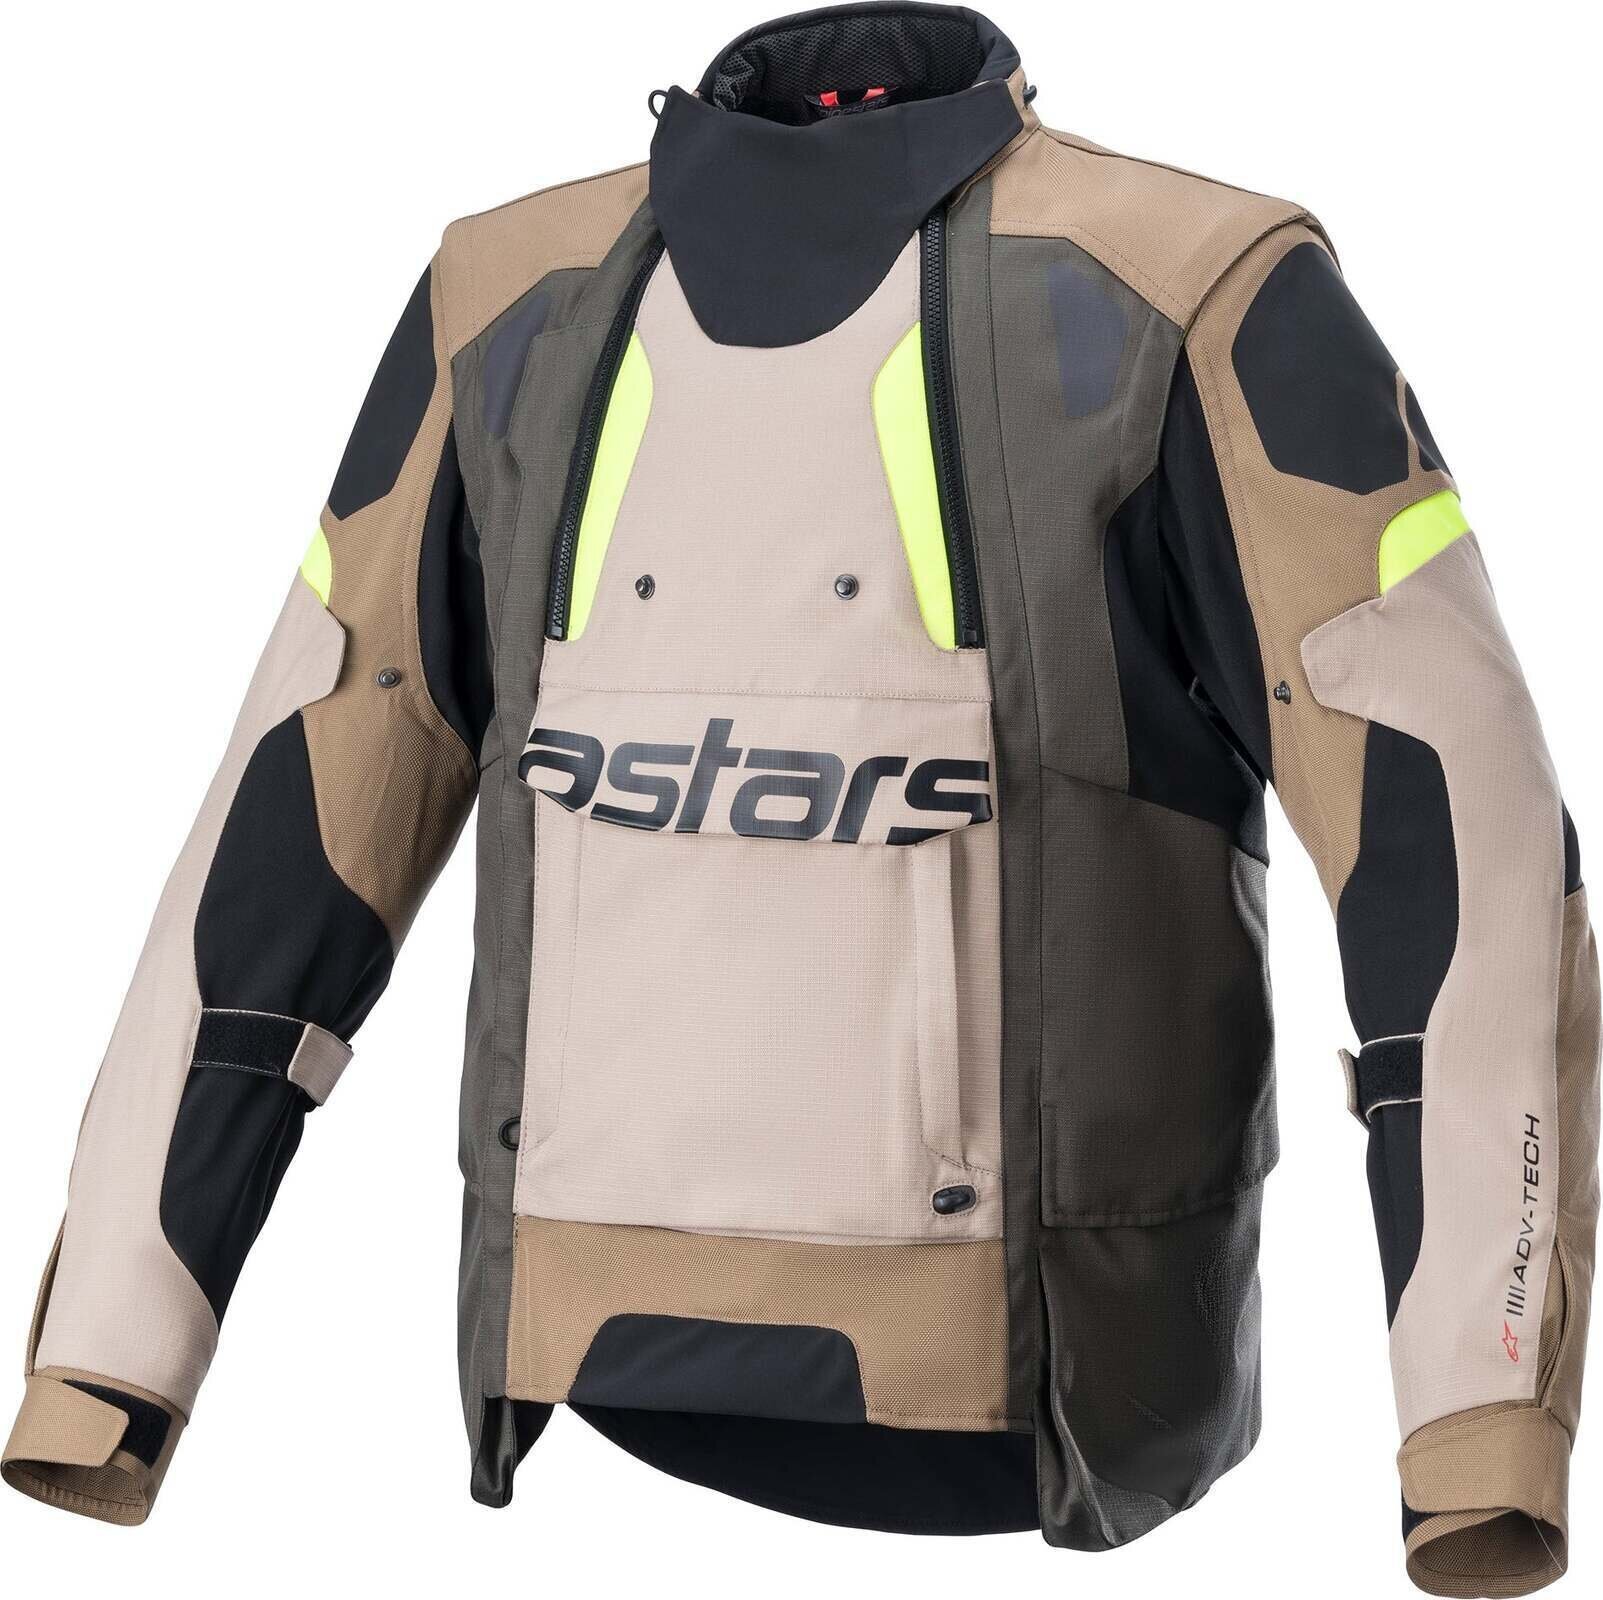 Textiele jas Alpinestars Halo Drystar Jacket Dark Khaki/Sand Yellow Fluo S Textiele jas